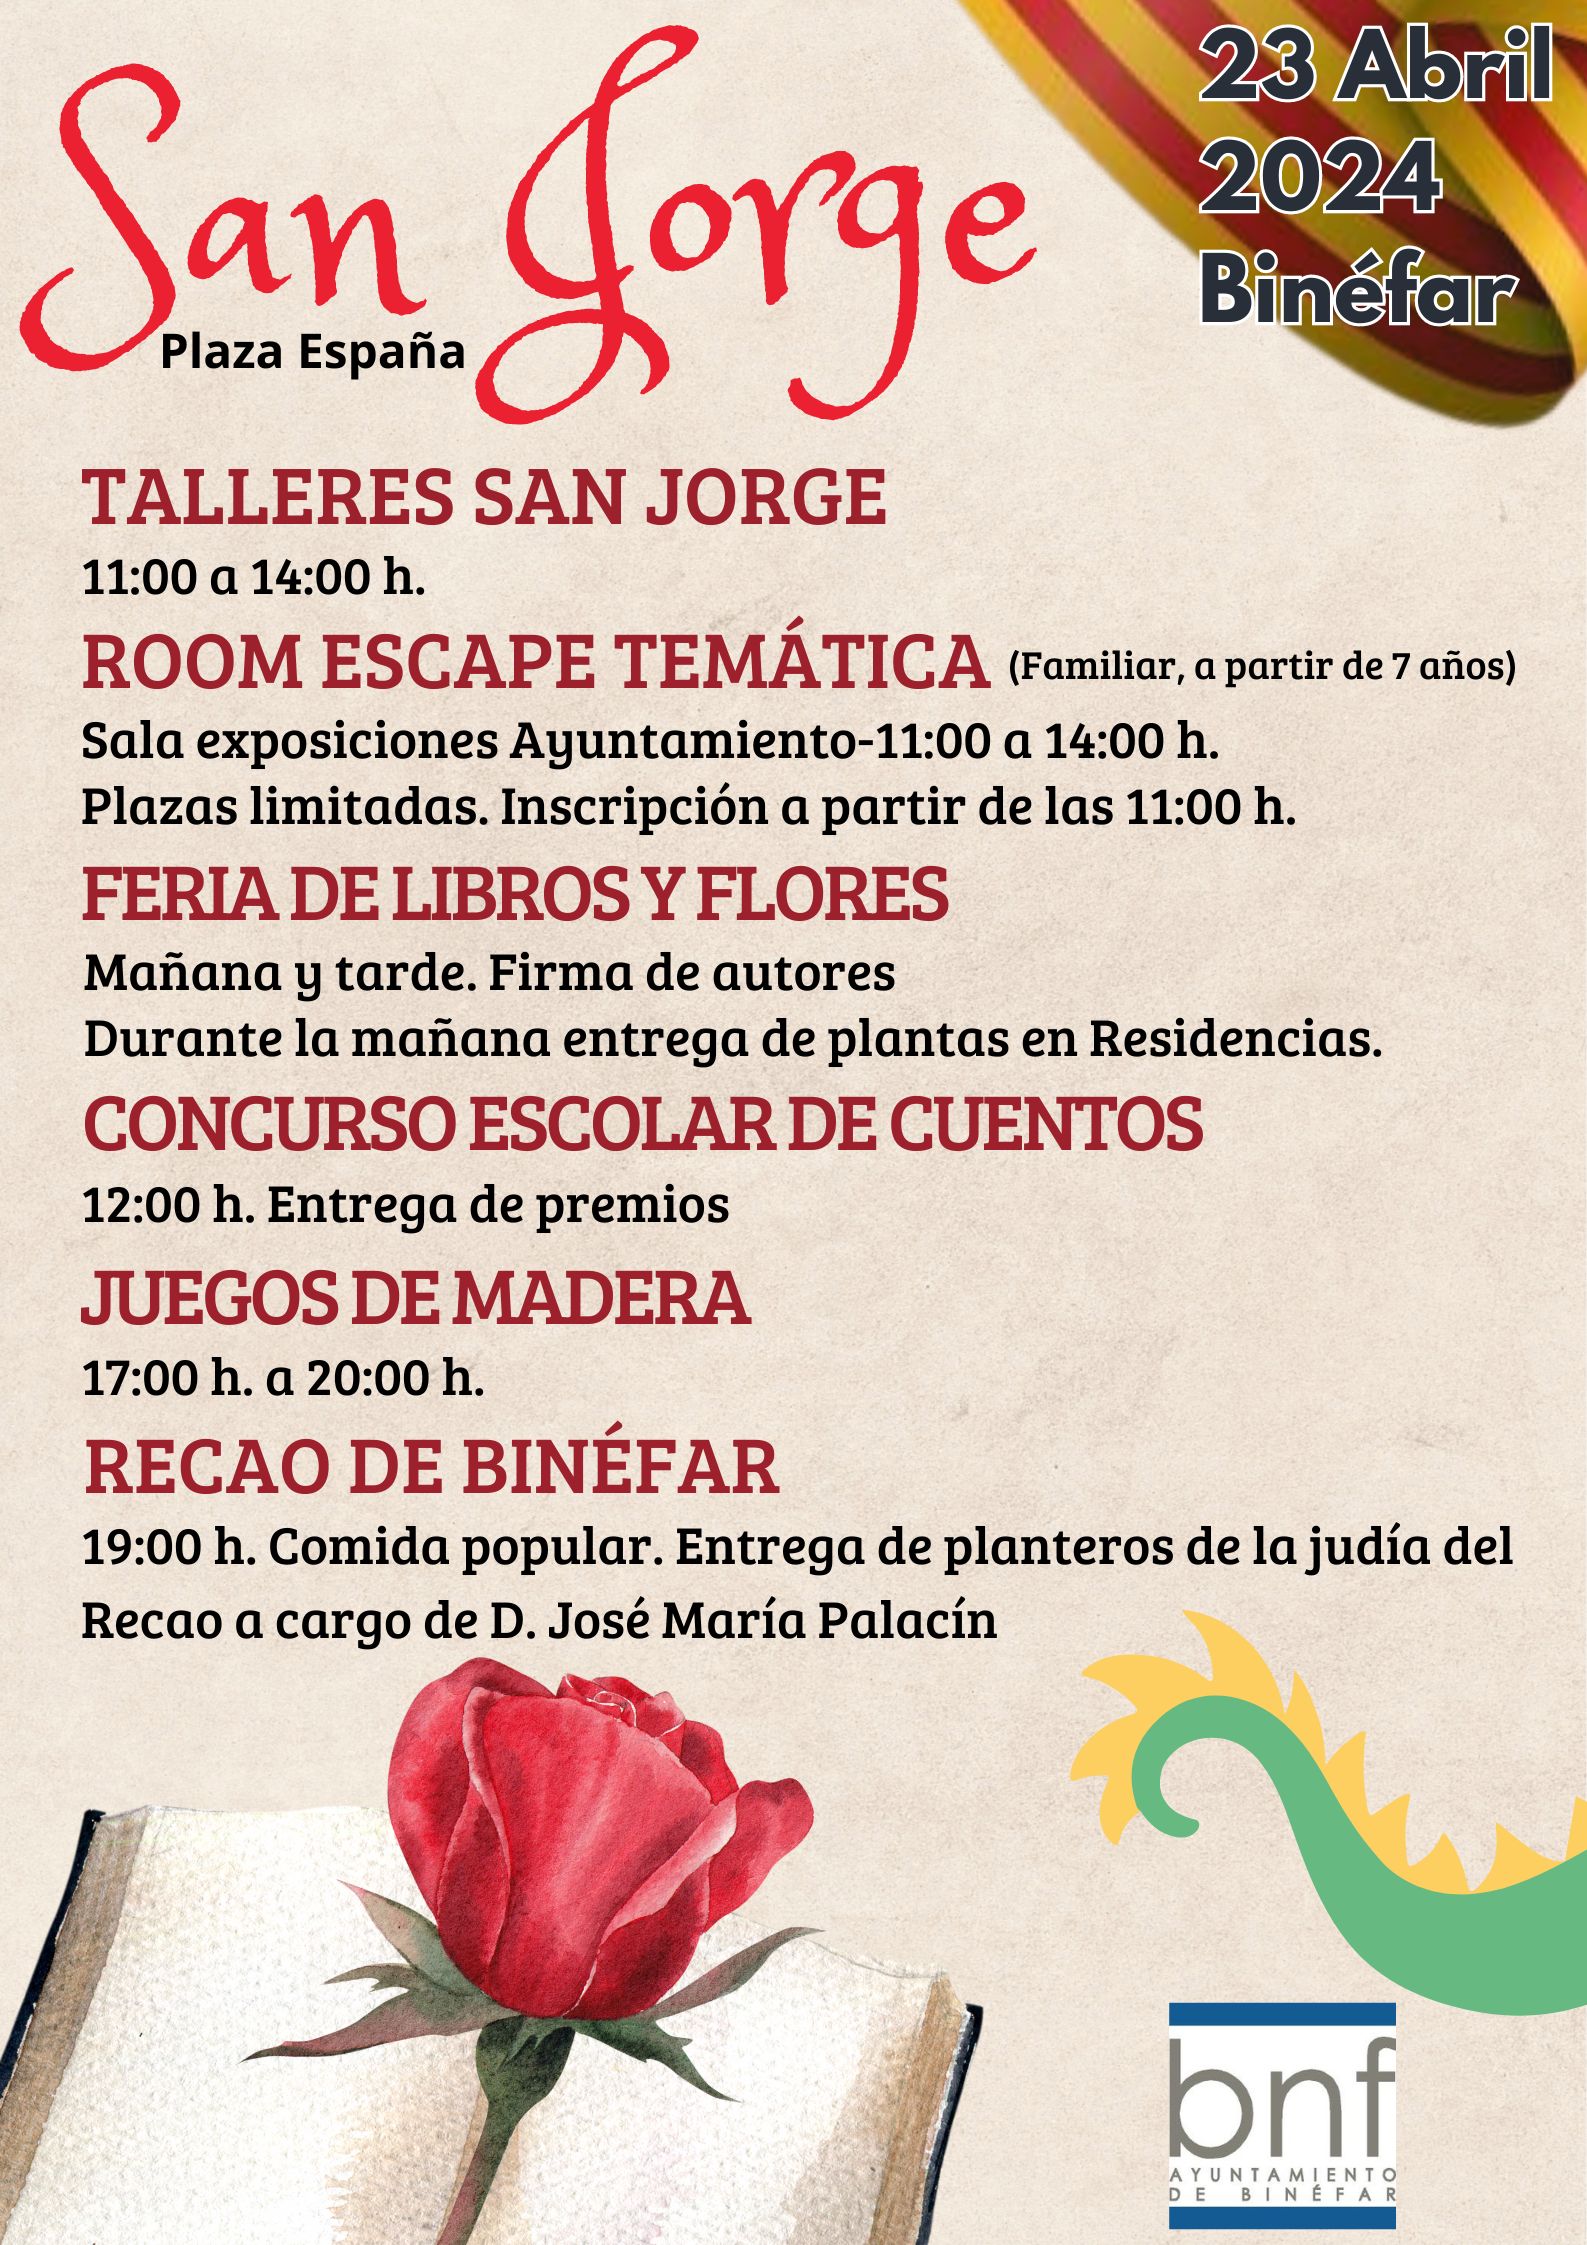 La Plaza España se llenará de libros y flores para celebrar el Día de Aragón